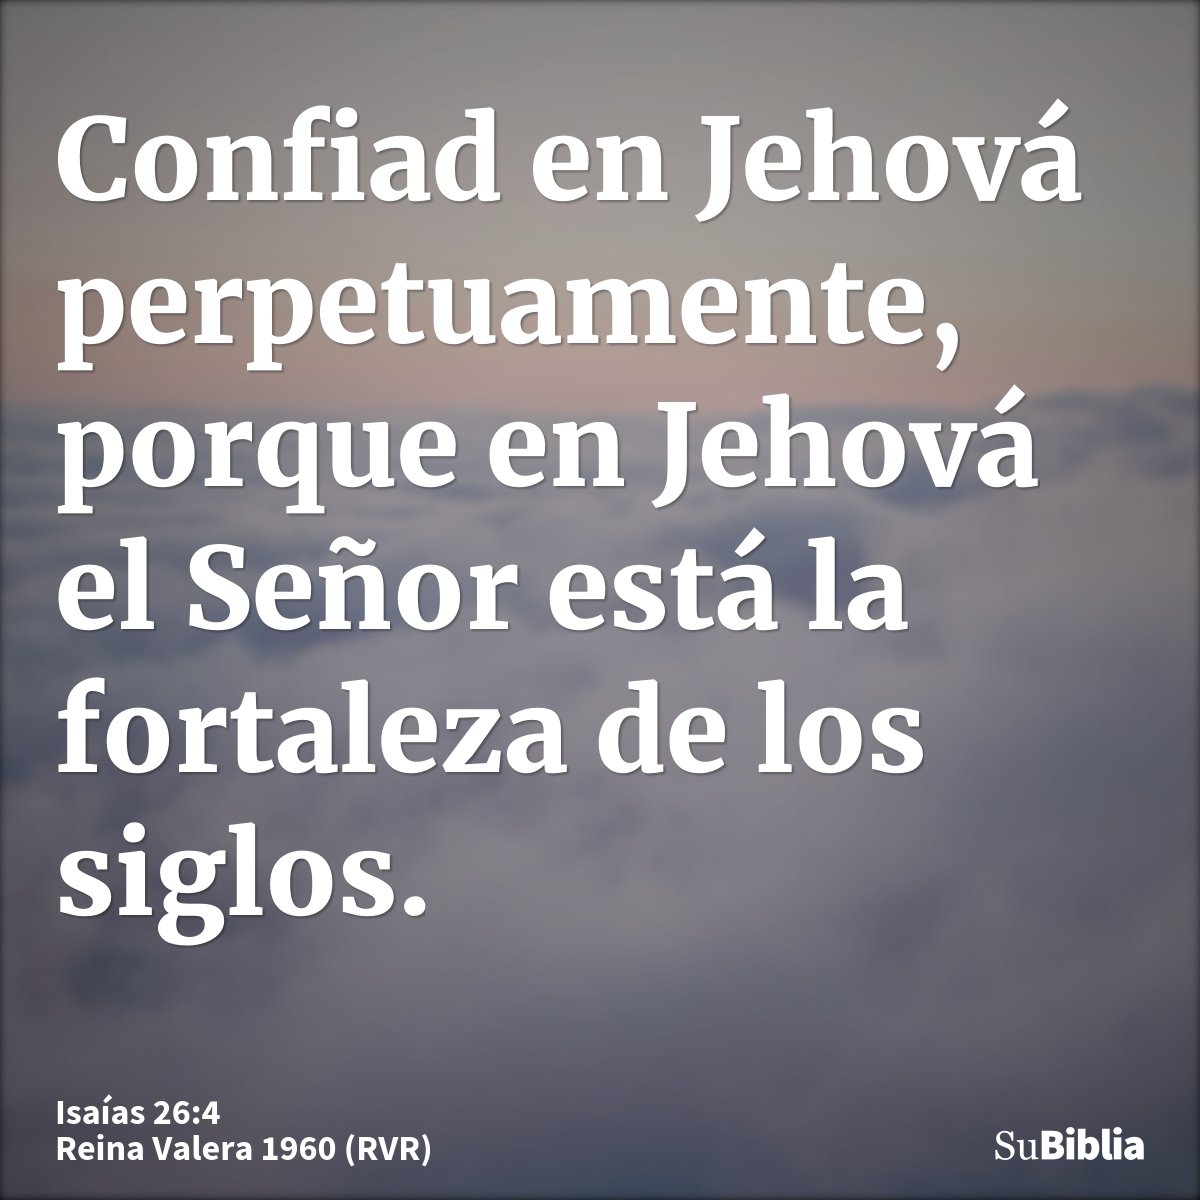 Confiad en Jehová perpetuamente, porque en Jehová el Señor está la fortaleza de los siglos.